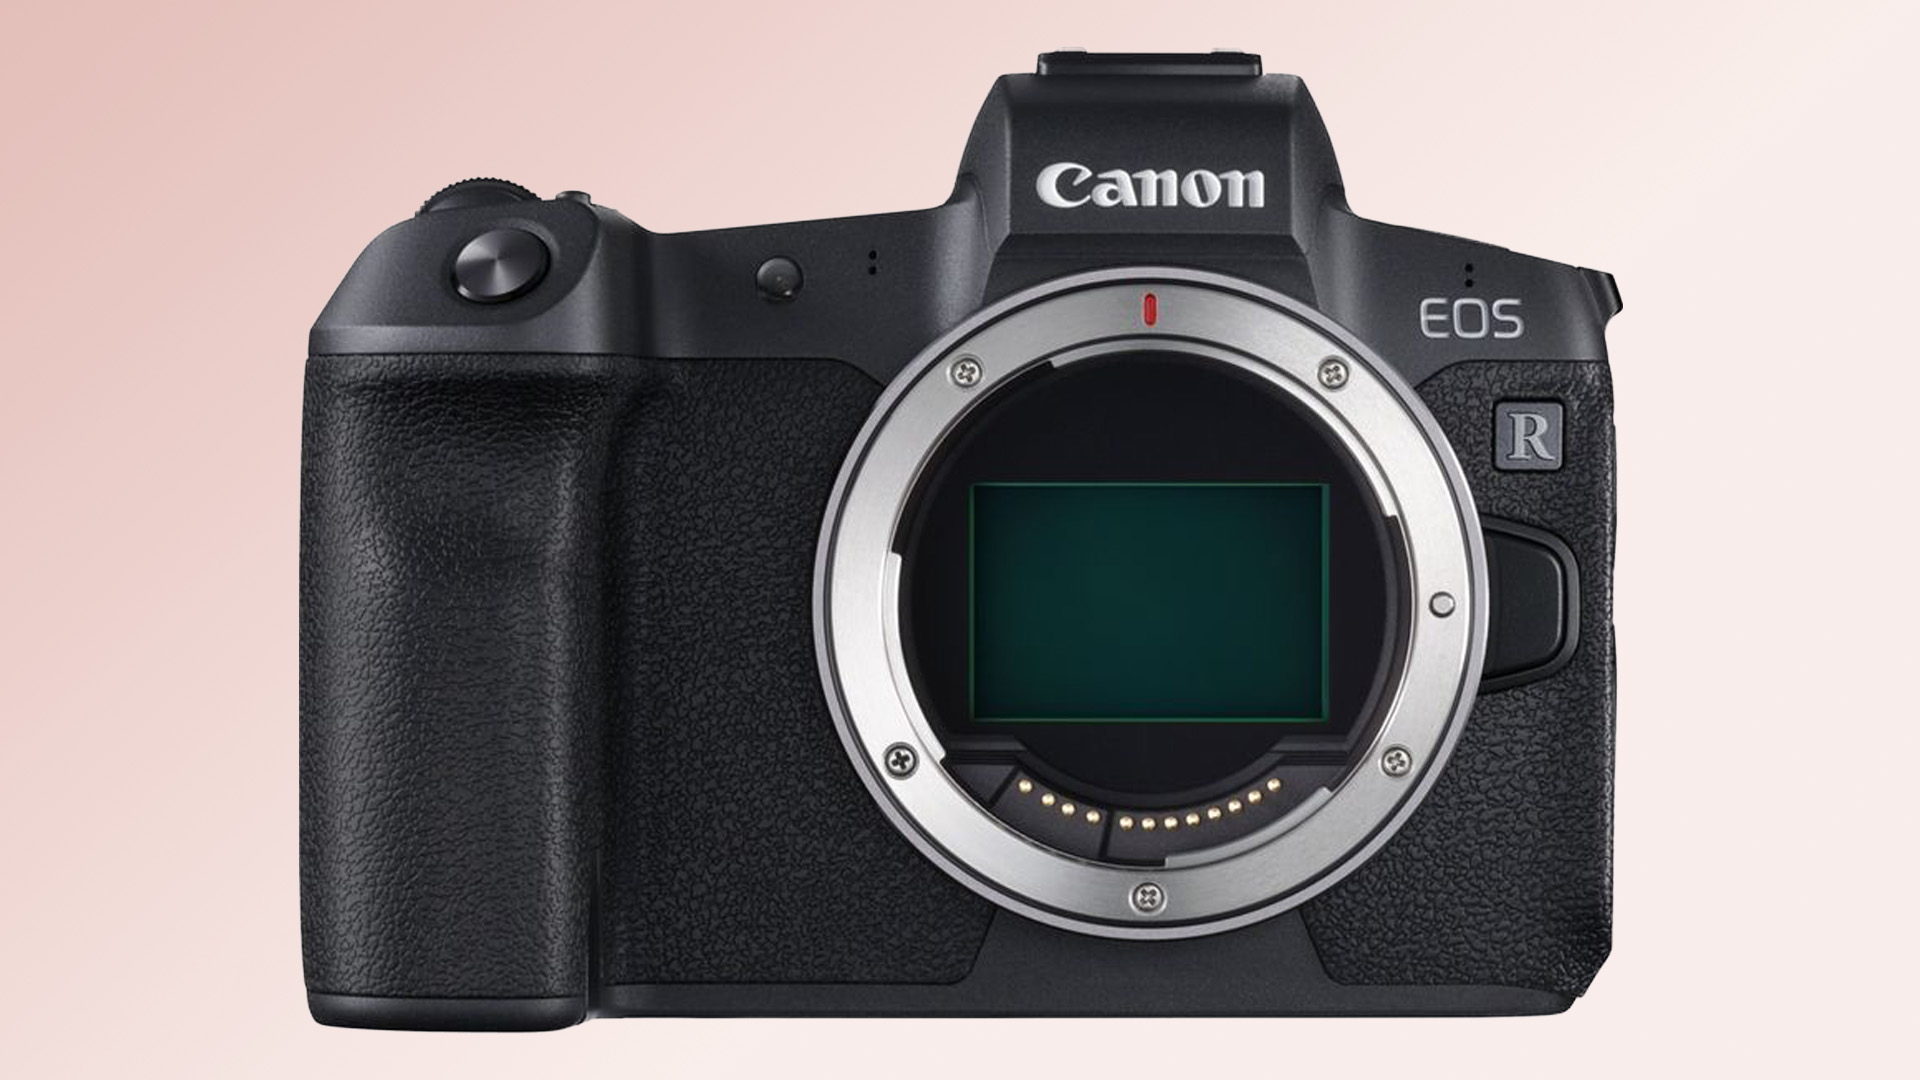  Камера Canon EOS R на оранжевом фоне